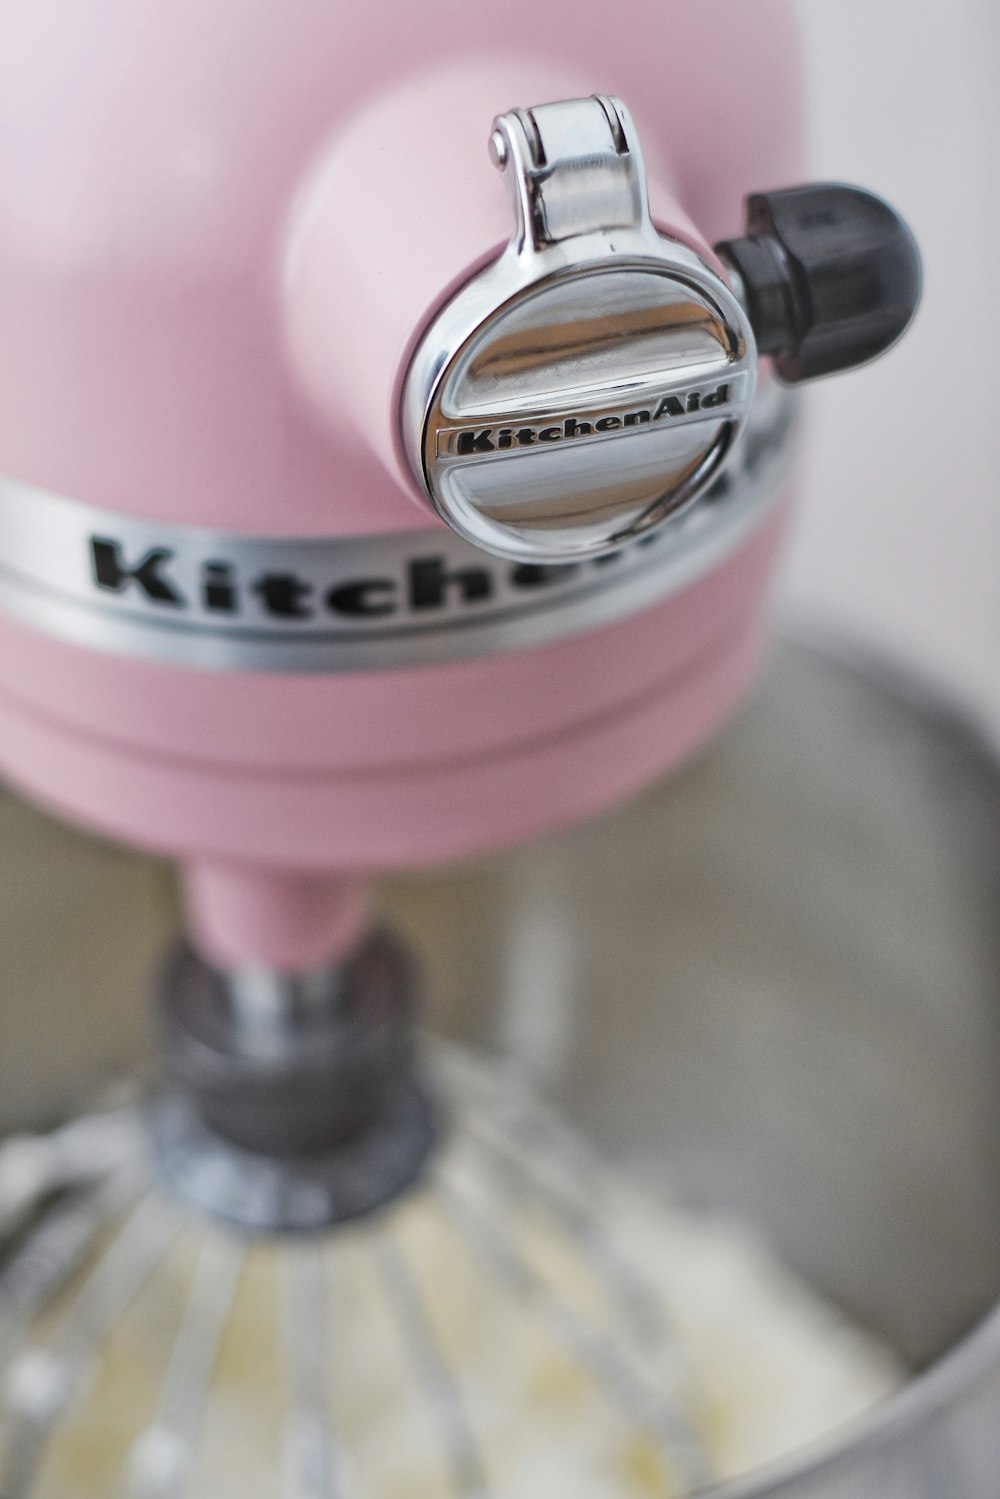 batidora de pie rosa Kitchen Aid con masa